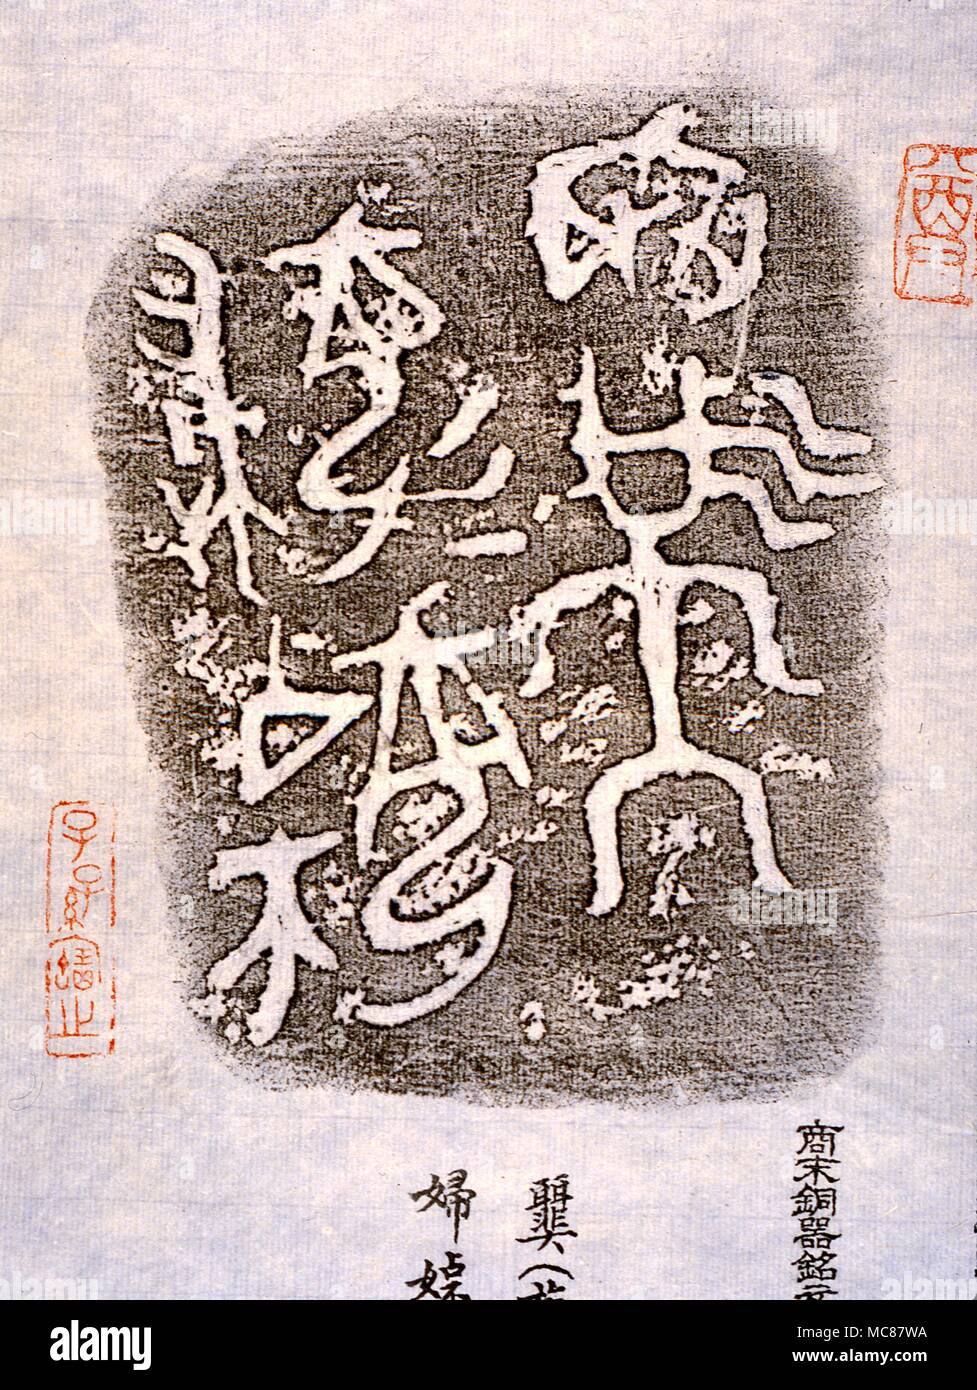 La mythologie chinoise de frottage bronze précoce révélant l'ustensile qui ont ensuite élaboré les pictogrammes pour former certains des caractères chinois. Hong Kong Banque D'Images